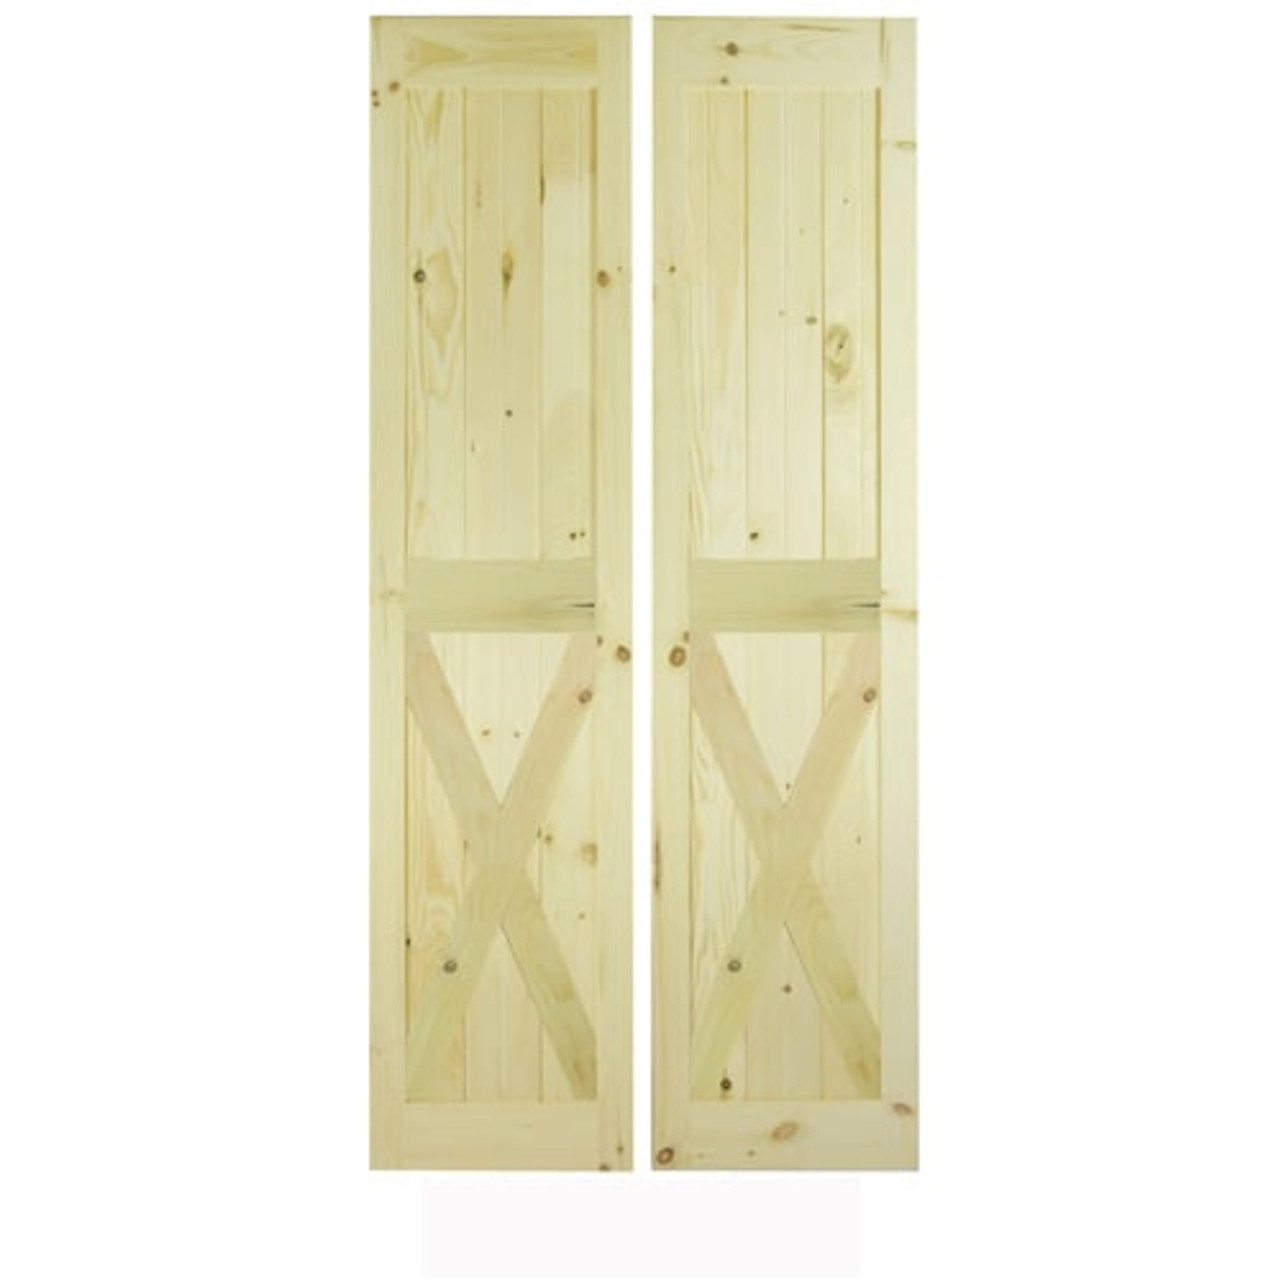 X Brace Wood 1 Panel Double Barn Door (Double Barn Doors) by Designer Doors